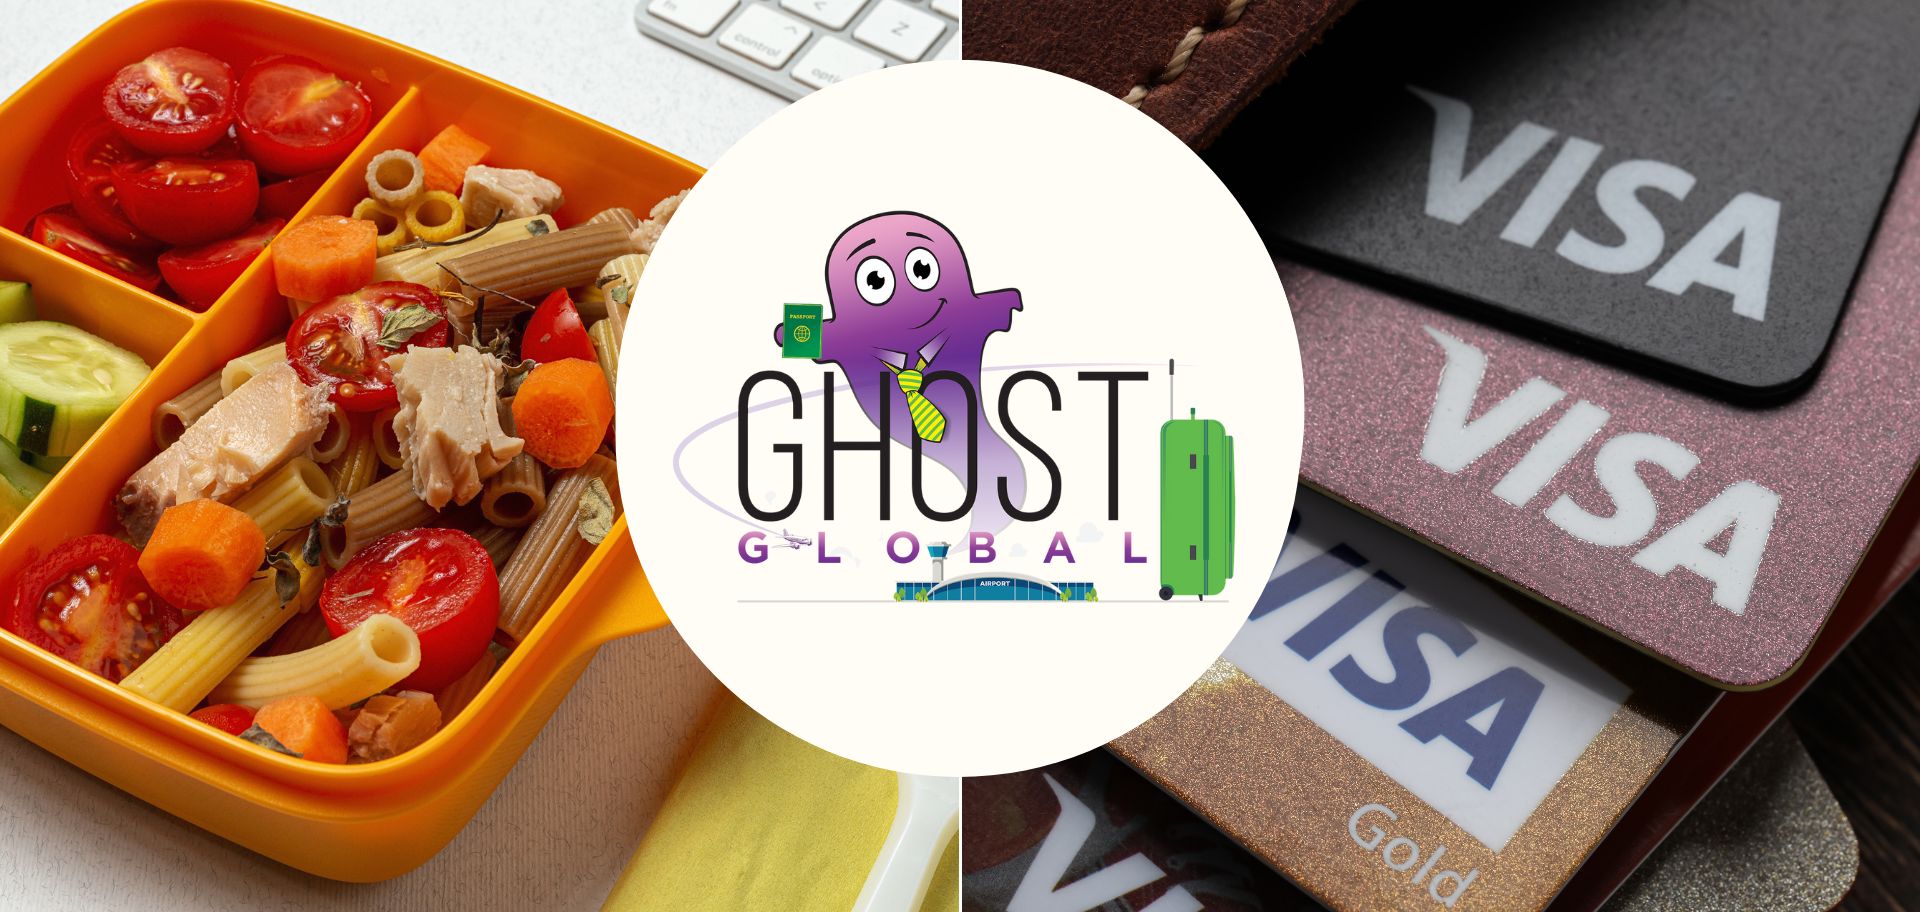 Ghost Global: the dark side of consistency